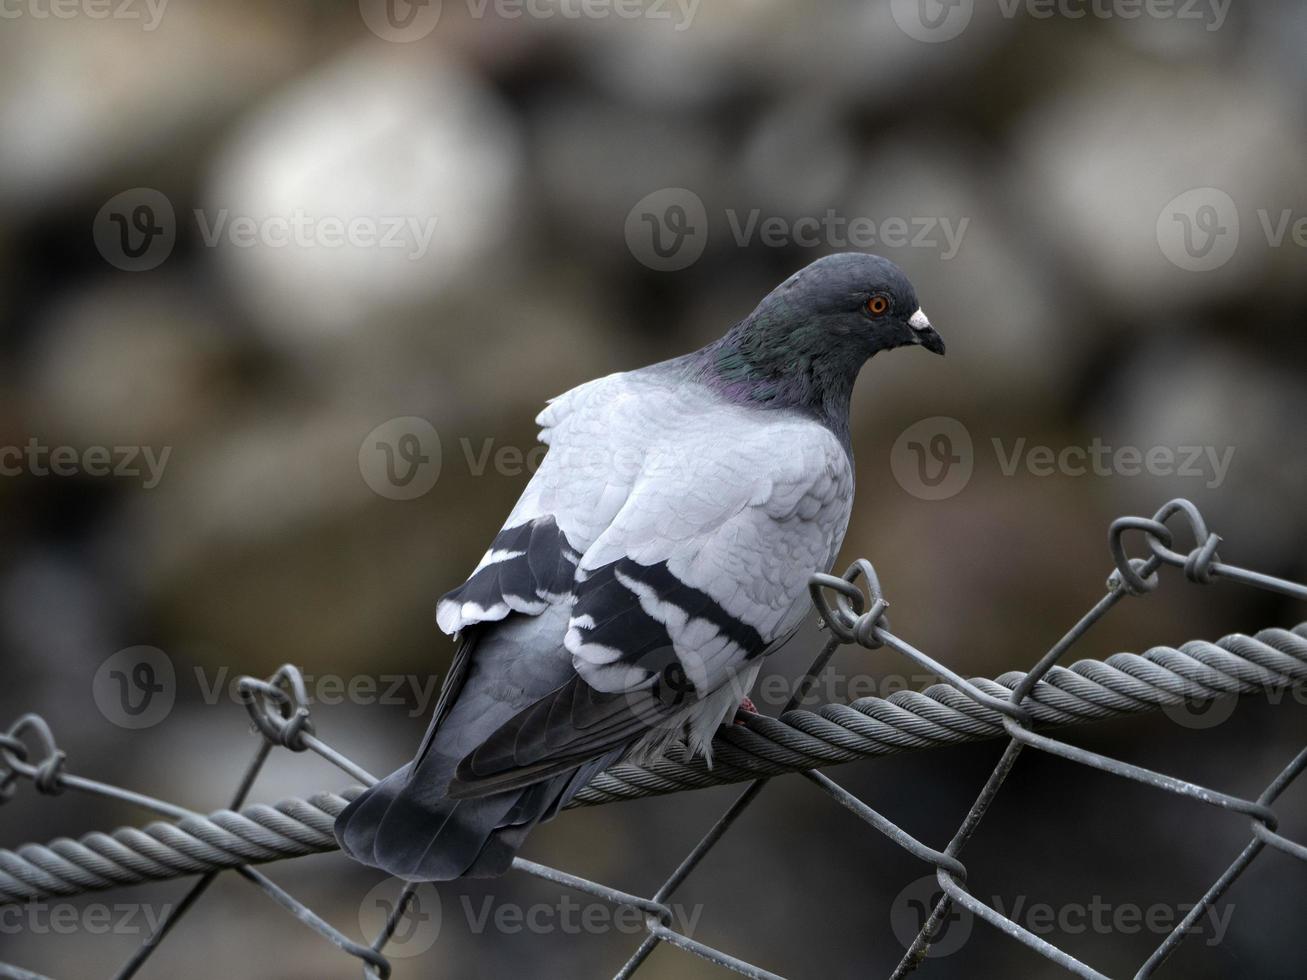 Pigeon in cinque terre liguria photo